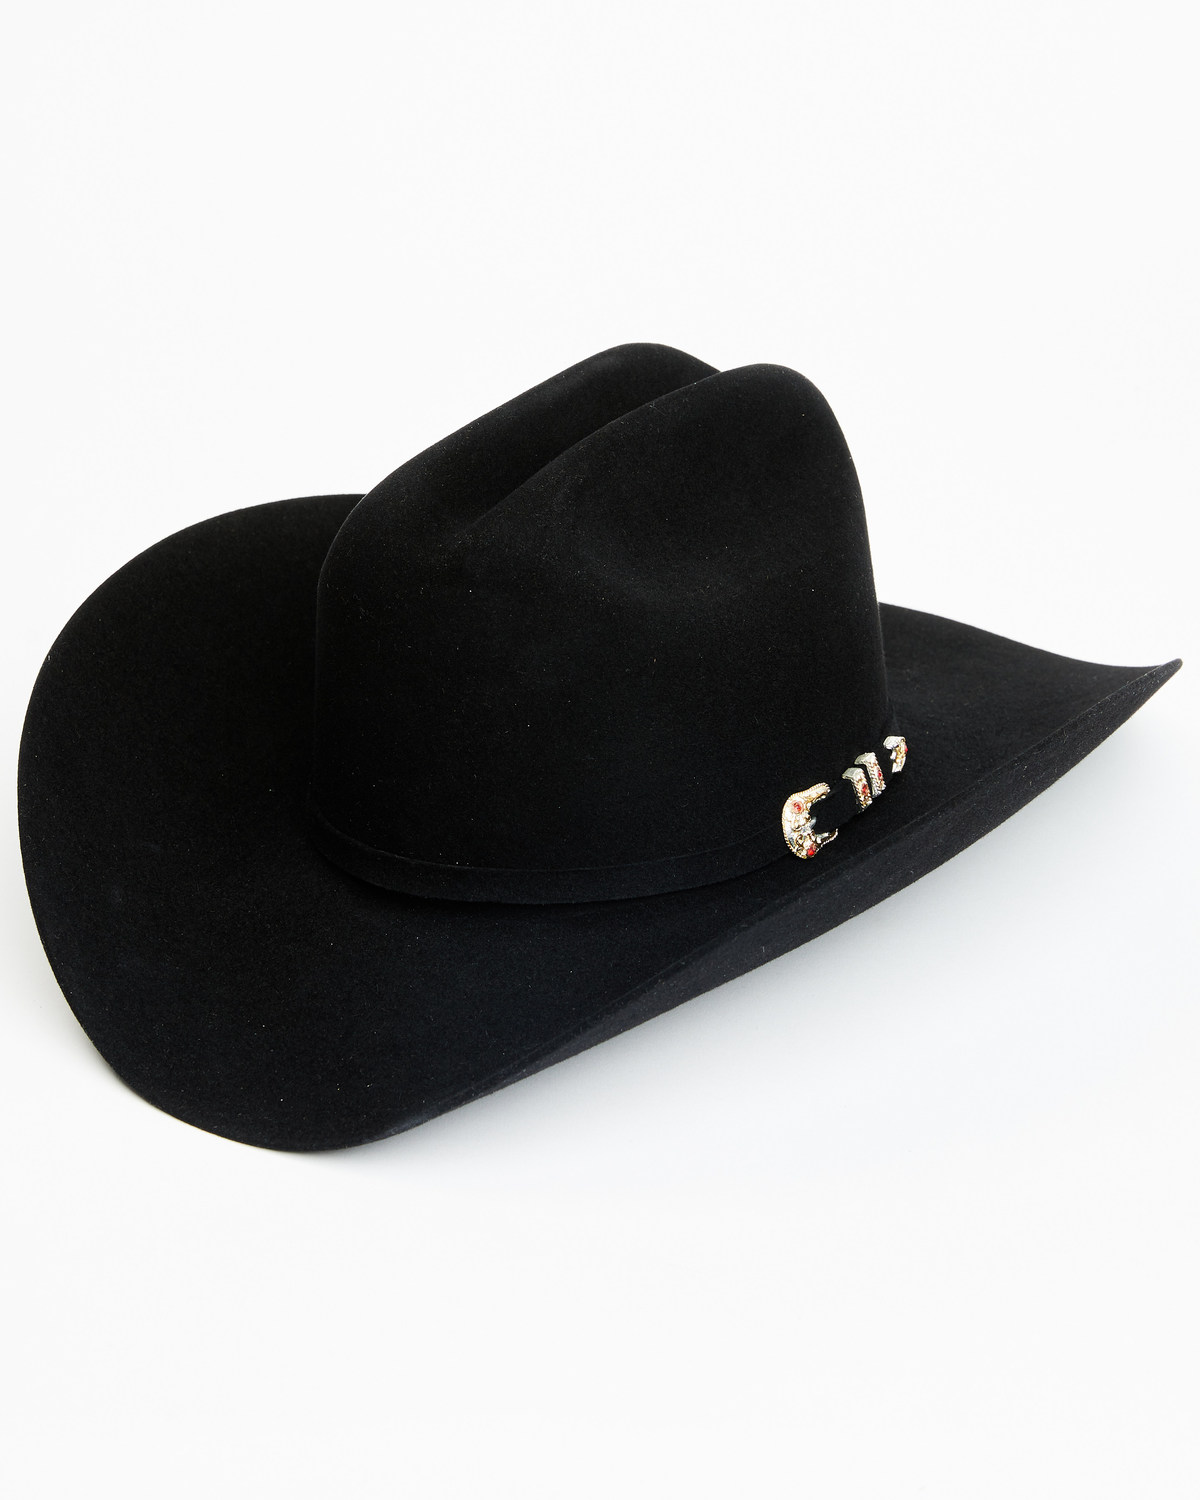 Larry Mahan Tucson 10X Felt Cowboy Hat